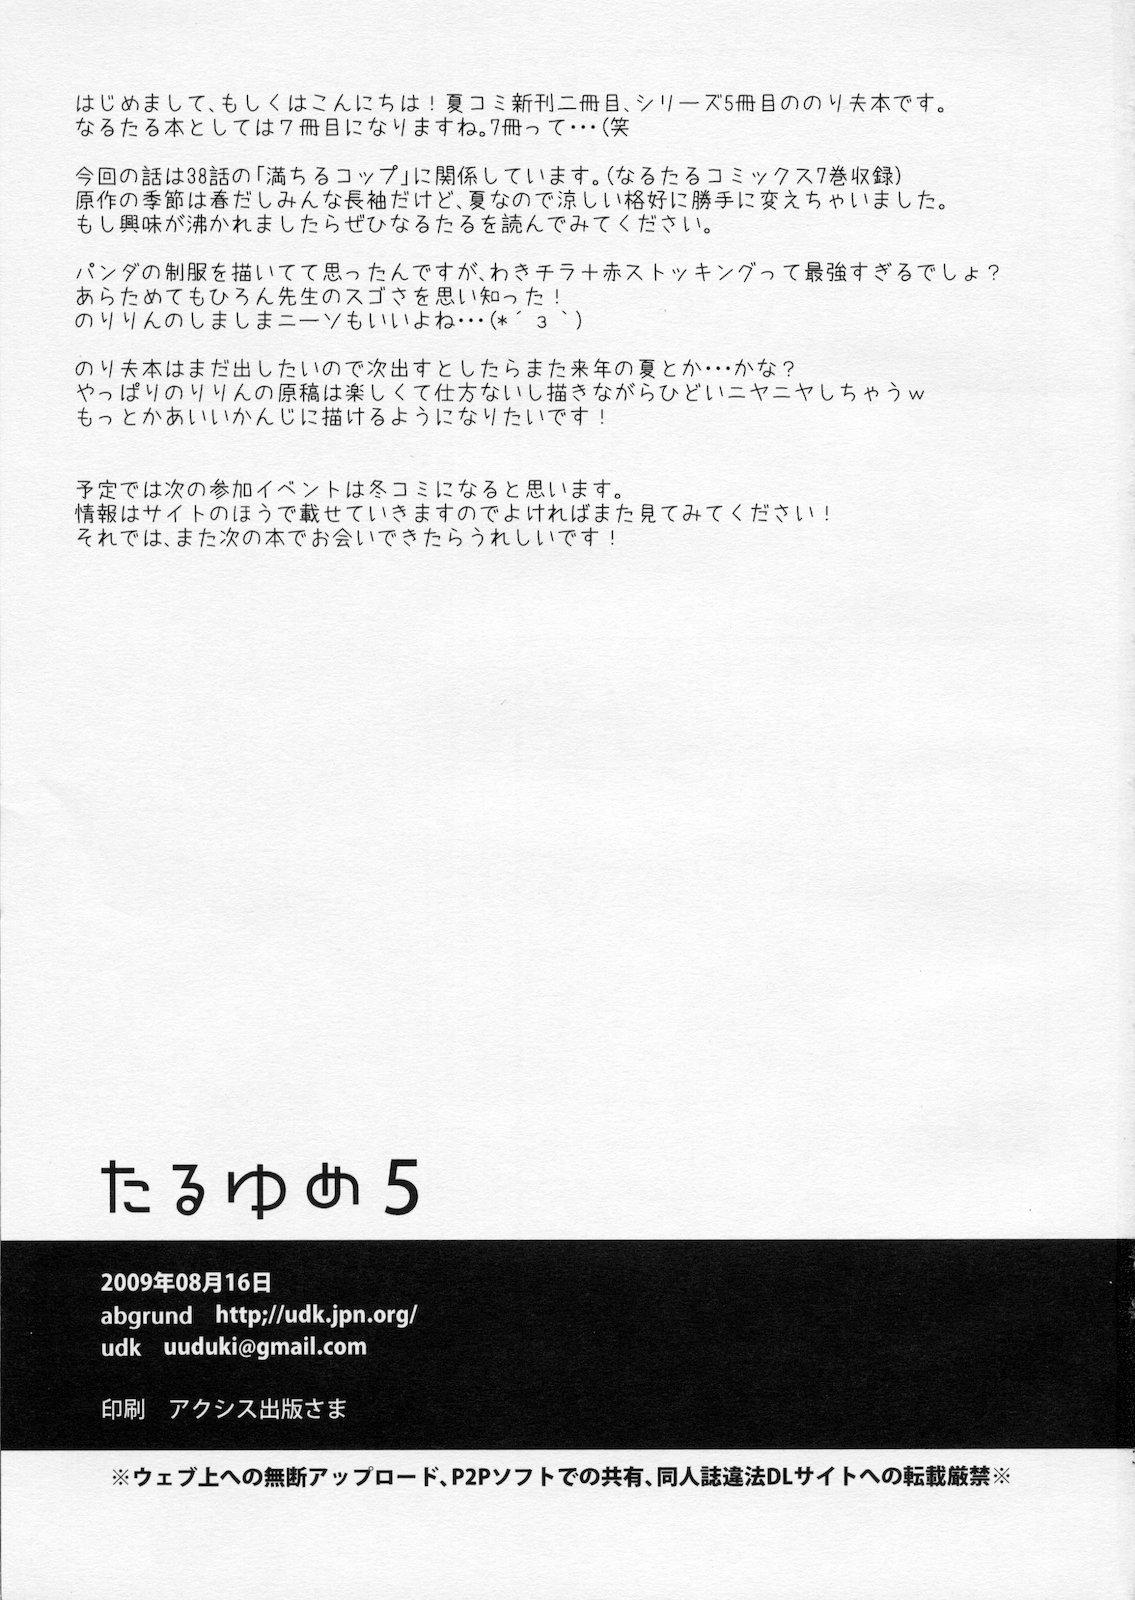 Fun Taru Yume 5 - Narutaru Adolescente - Page 2